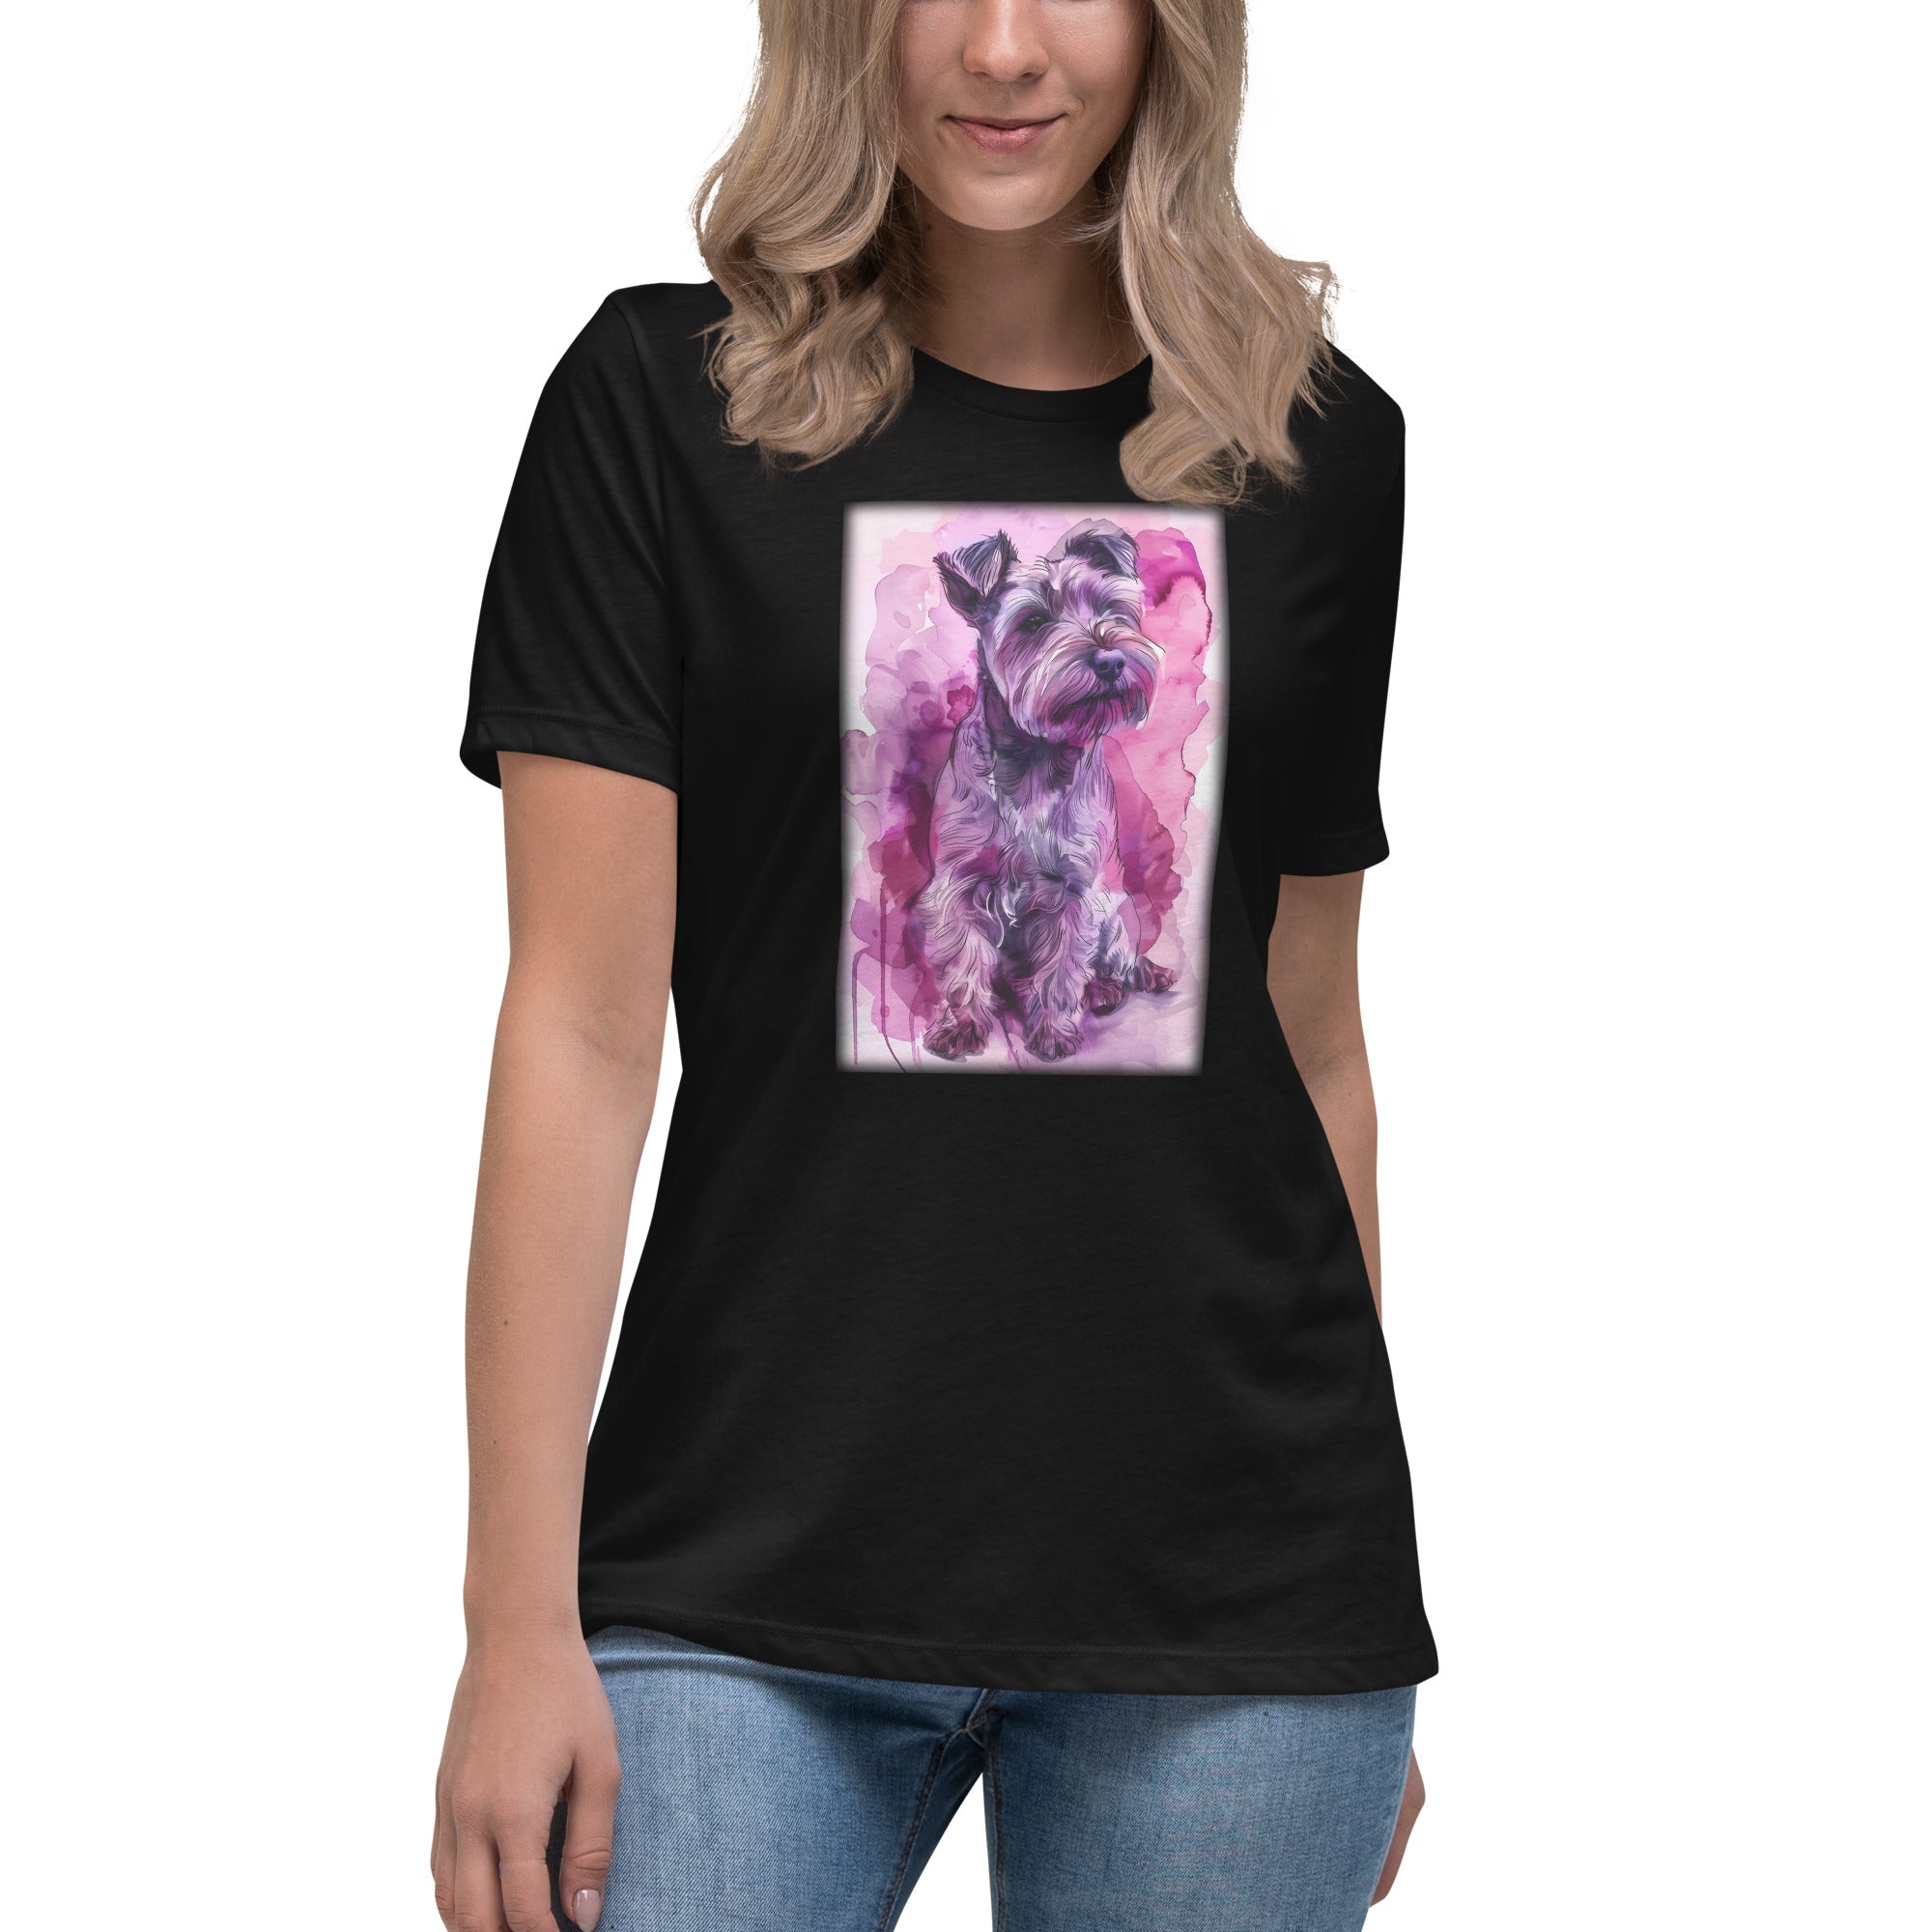 Glen of Imaal Terrier Women's Relaxed T-Shirt